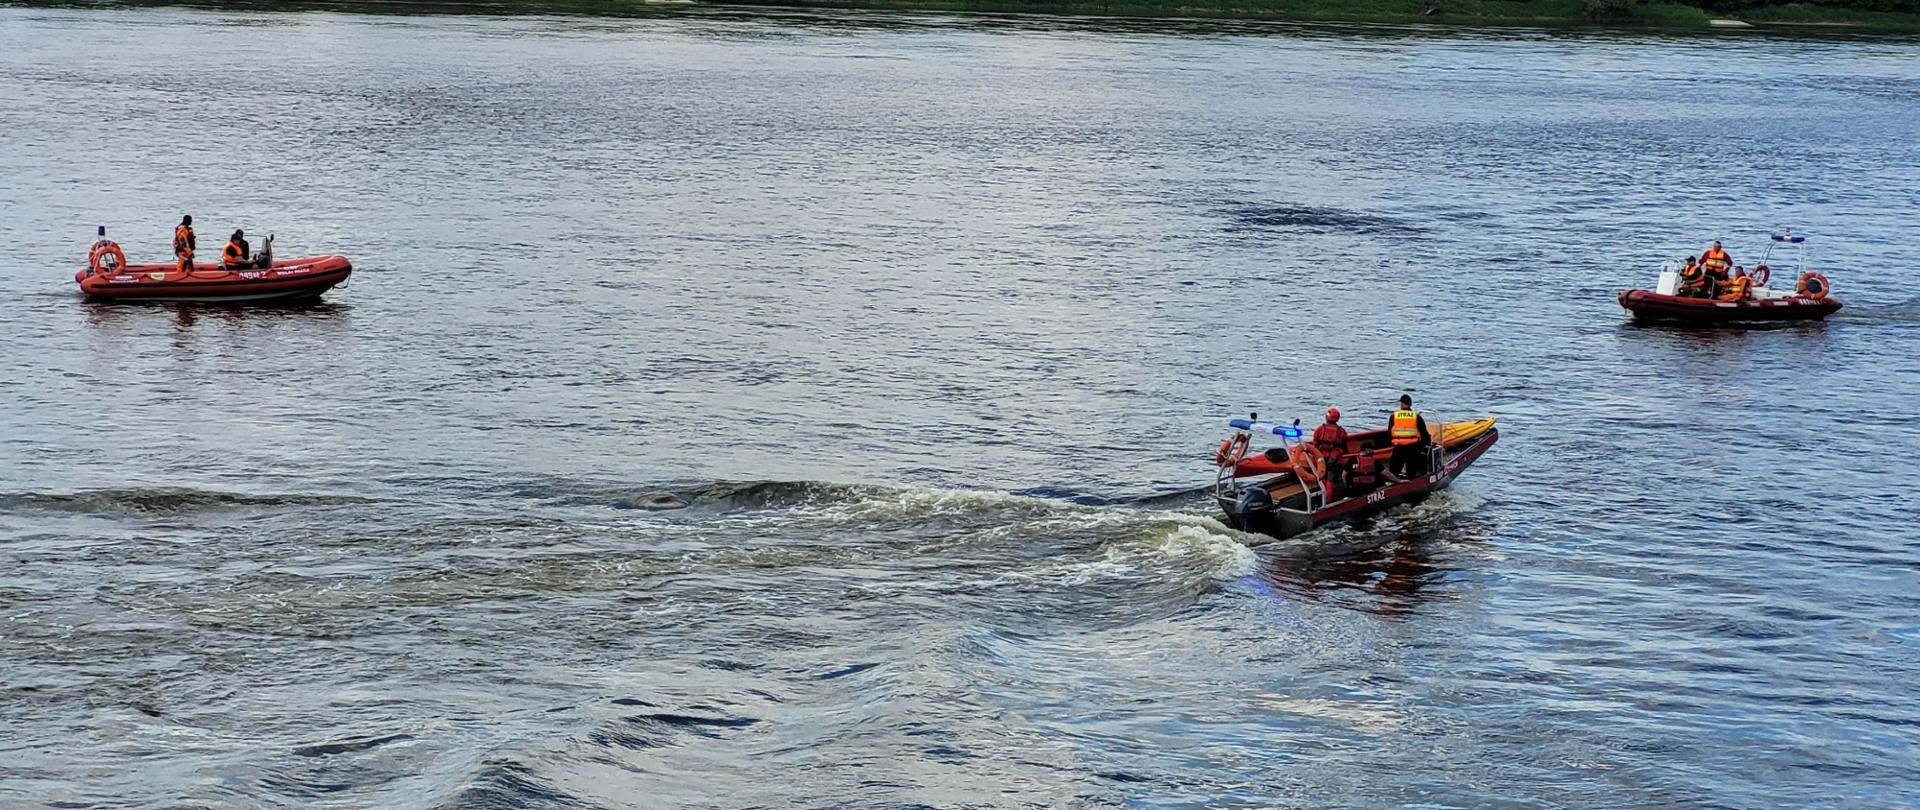 Zdjęcie przedstawia 3 łodzie pływające po rzece. Na ich pokładzie znajdują się strażacy ubrani w sprzęt asekuracyjny.